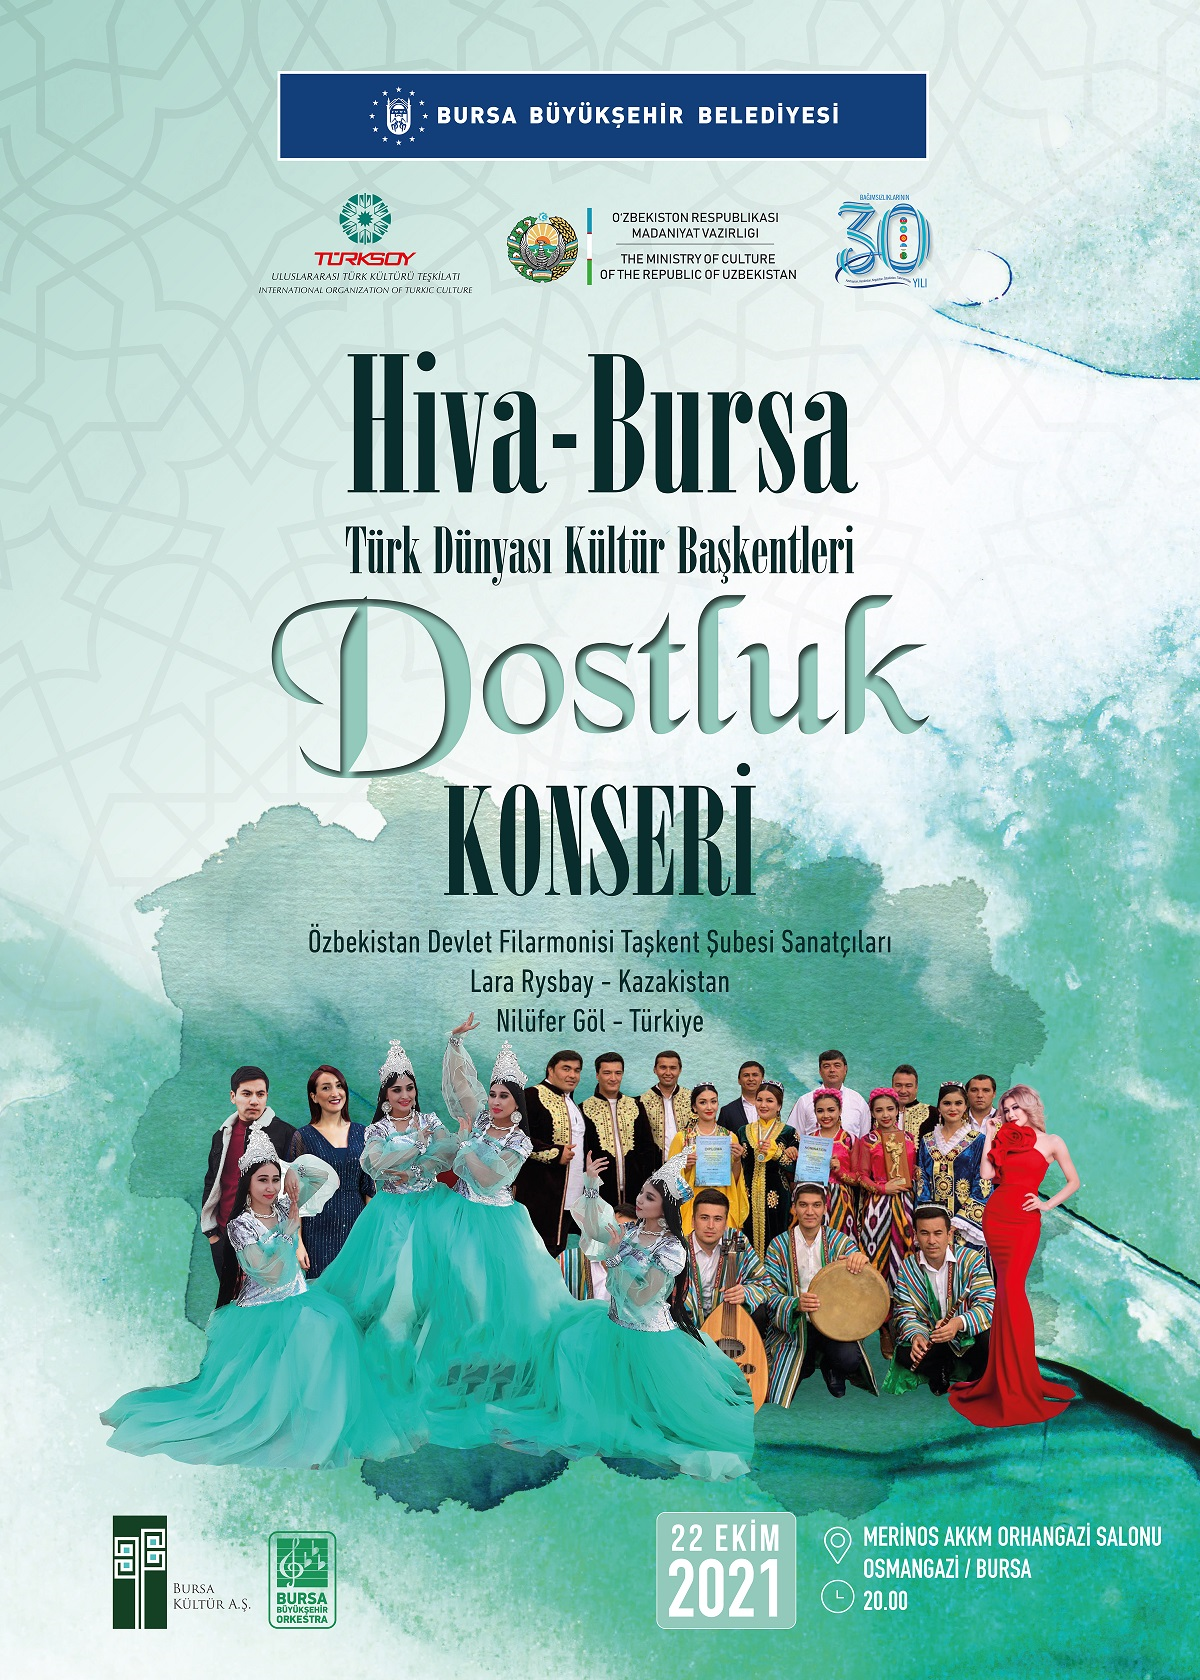 Hiva - Bursa Türk Dünyası Kültür Başkentleri Dostluk Konseri